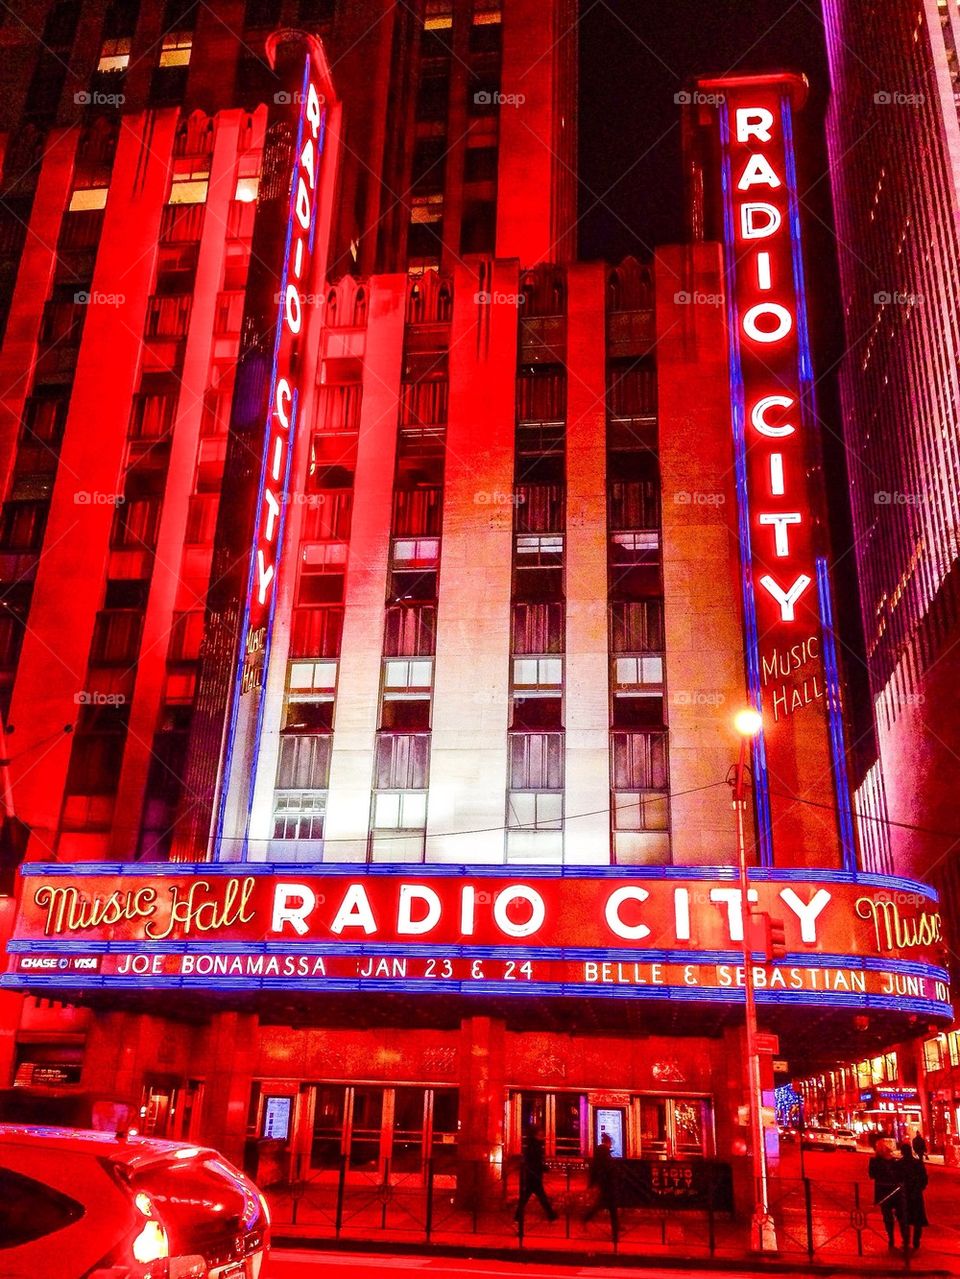 Radio city music hall